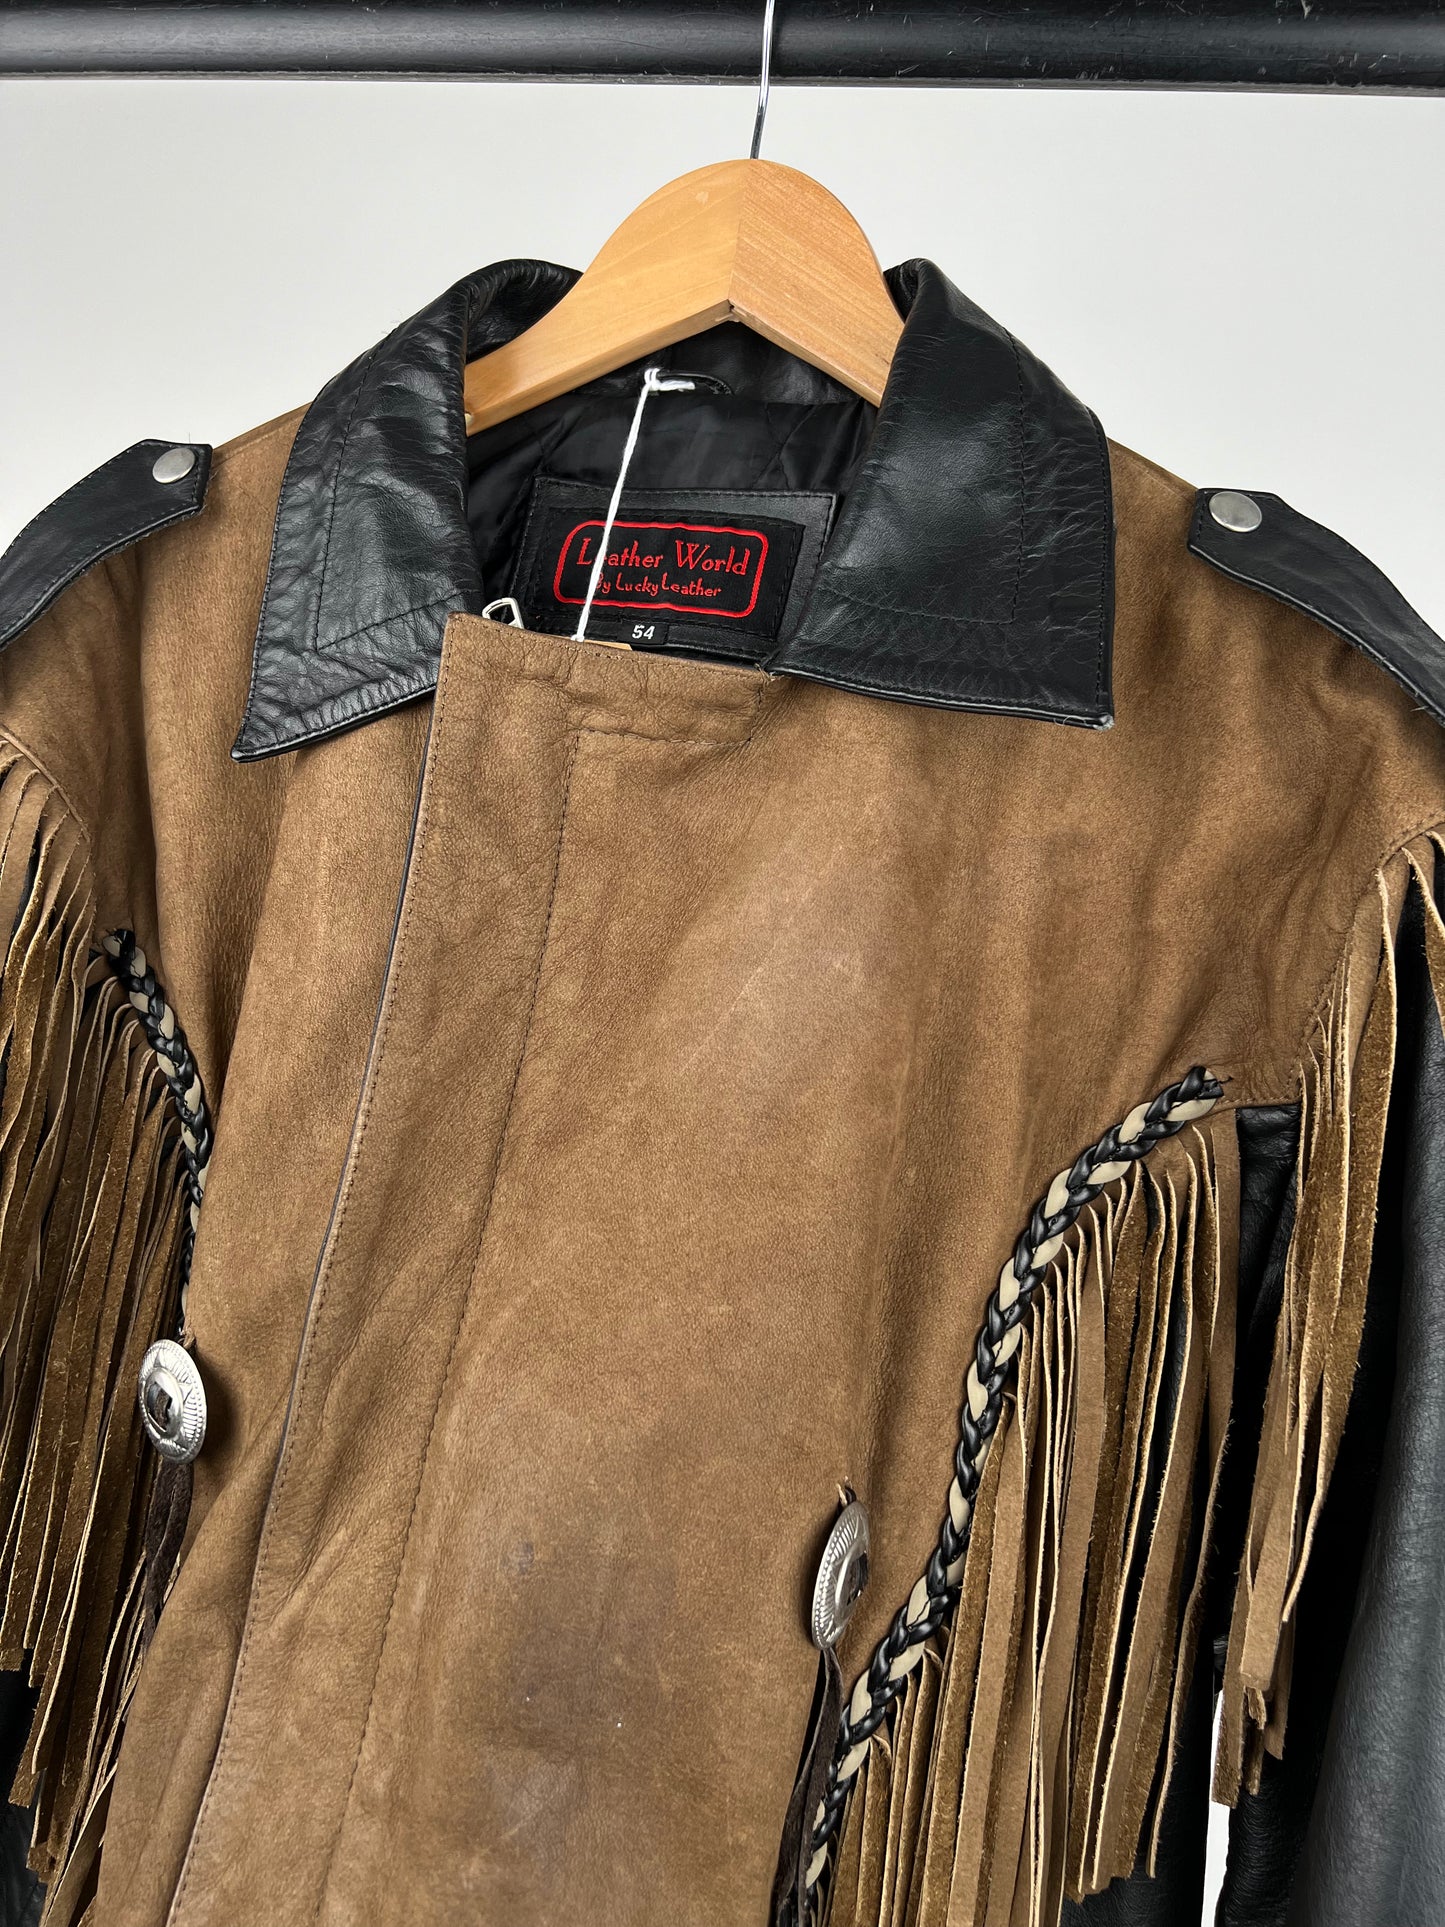 Vintage 90s Leather Tassel Jacket